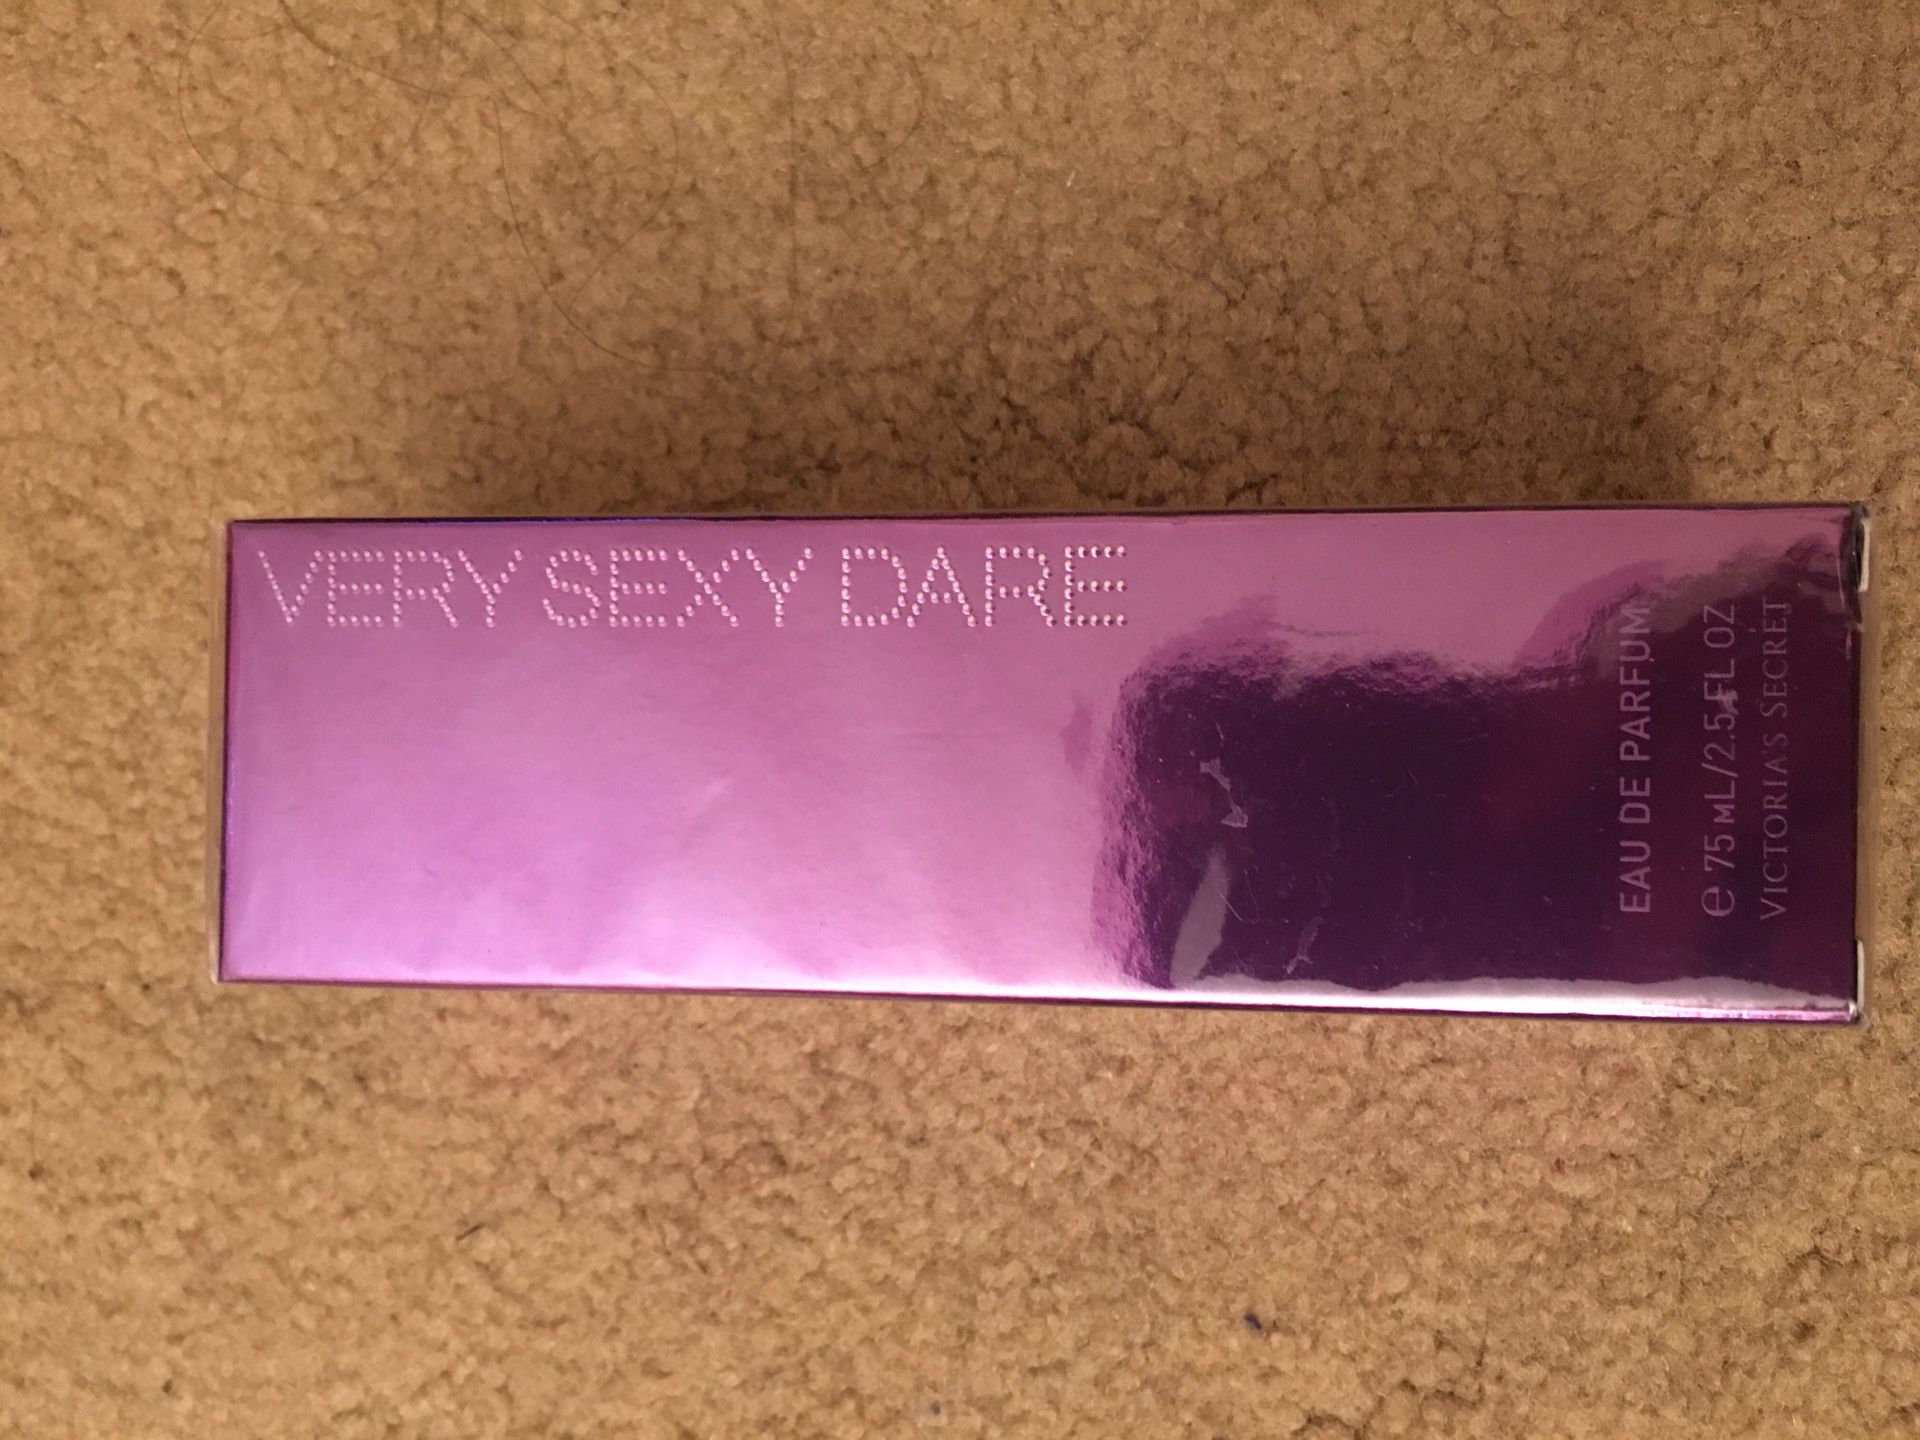 Victoria's Secret Very sexy perfume